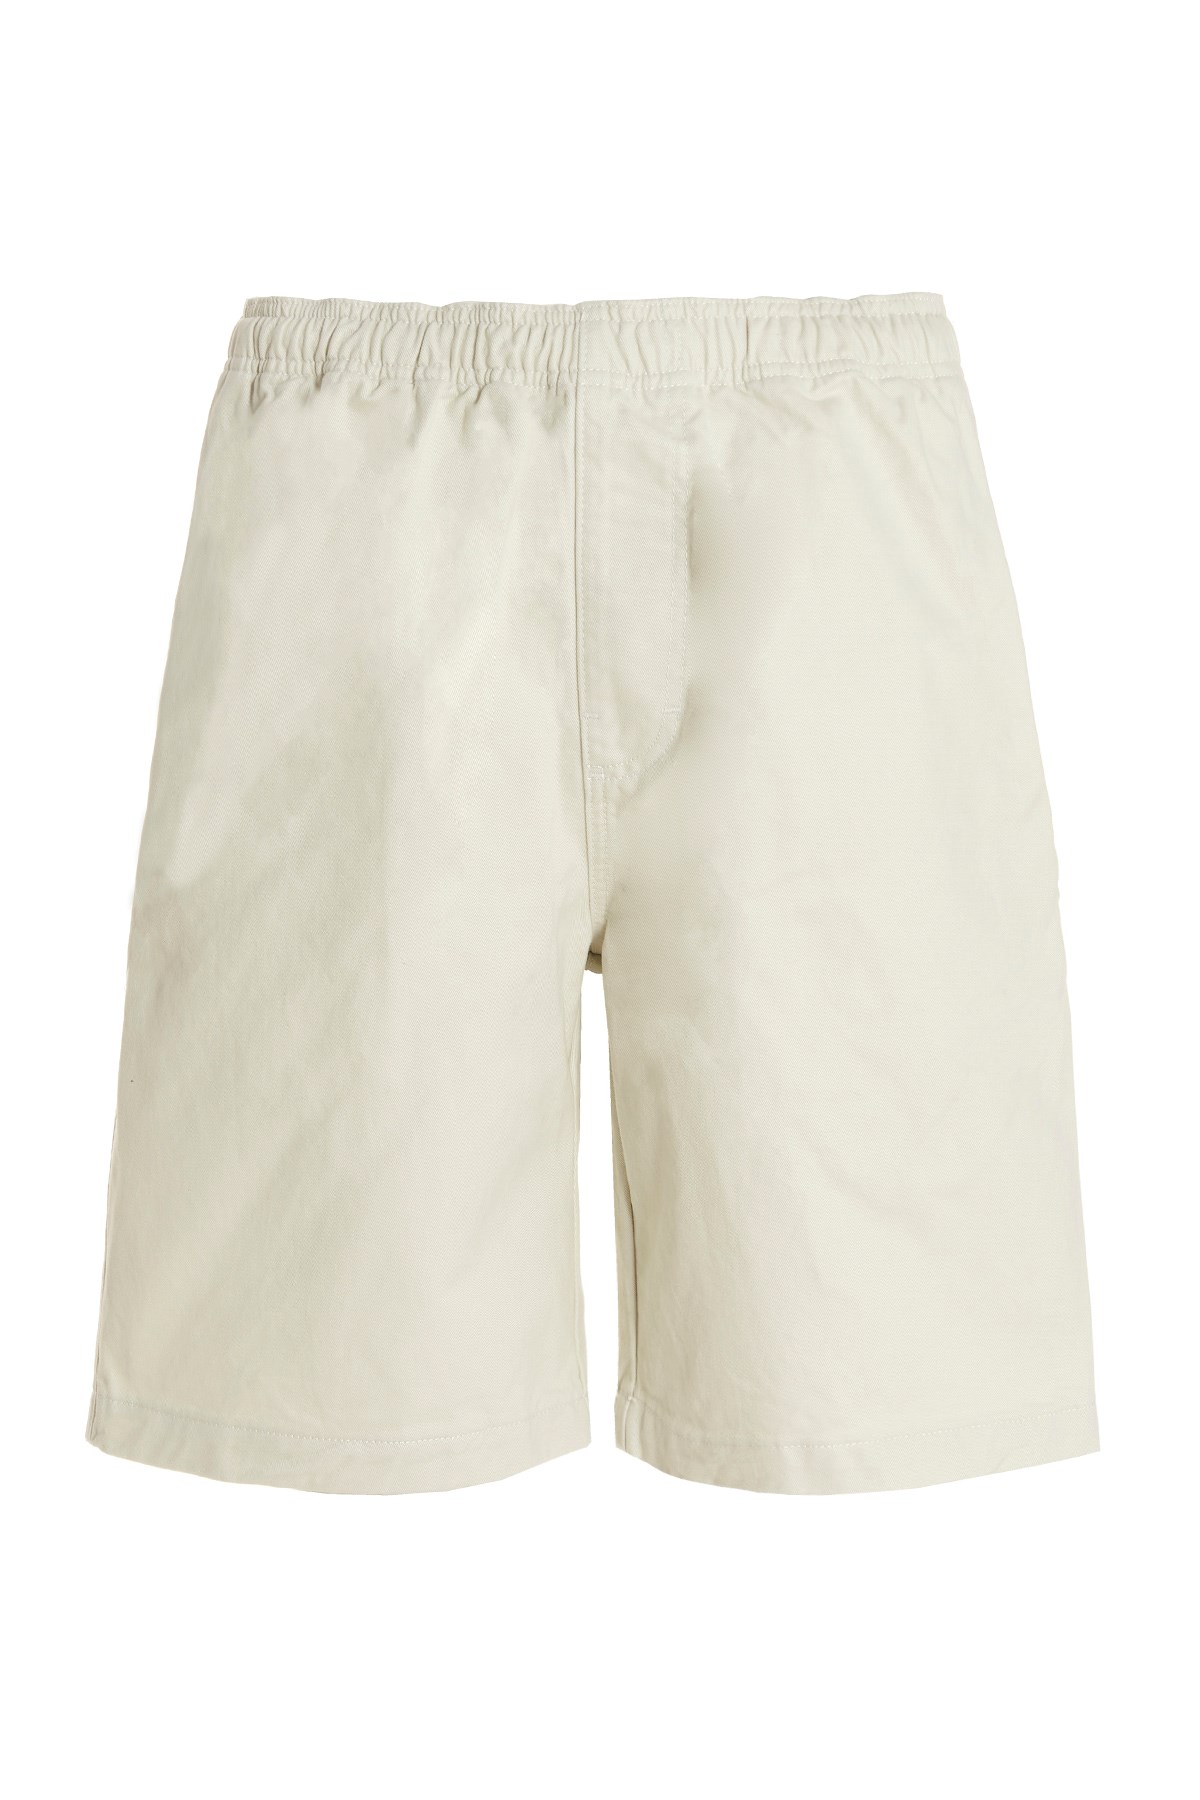 STUSSY Bermuda-Shorts Aus Baumwolle